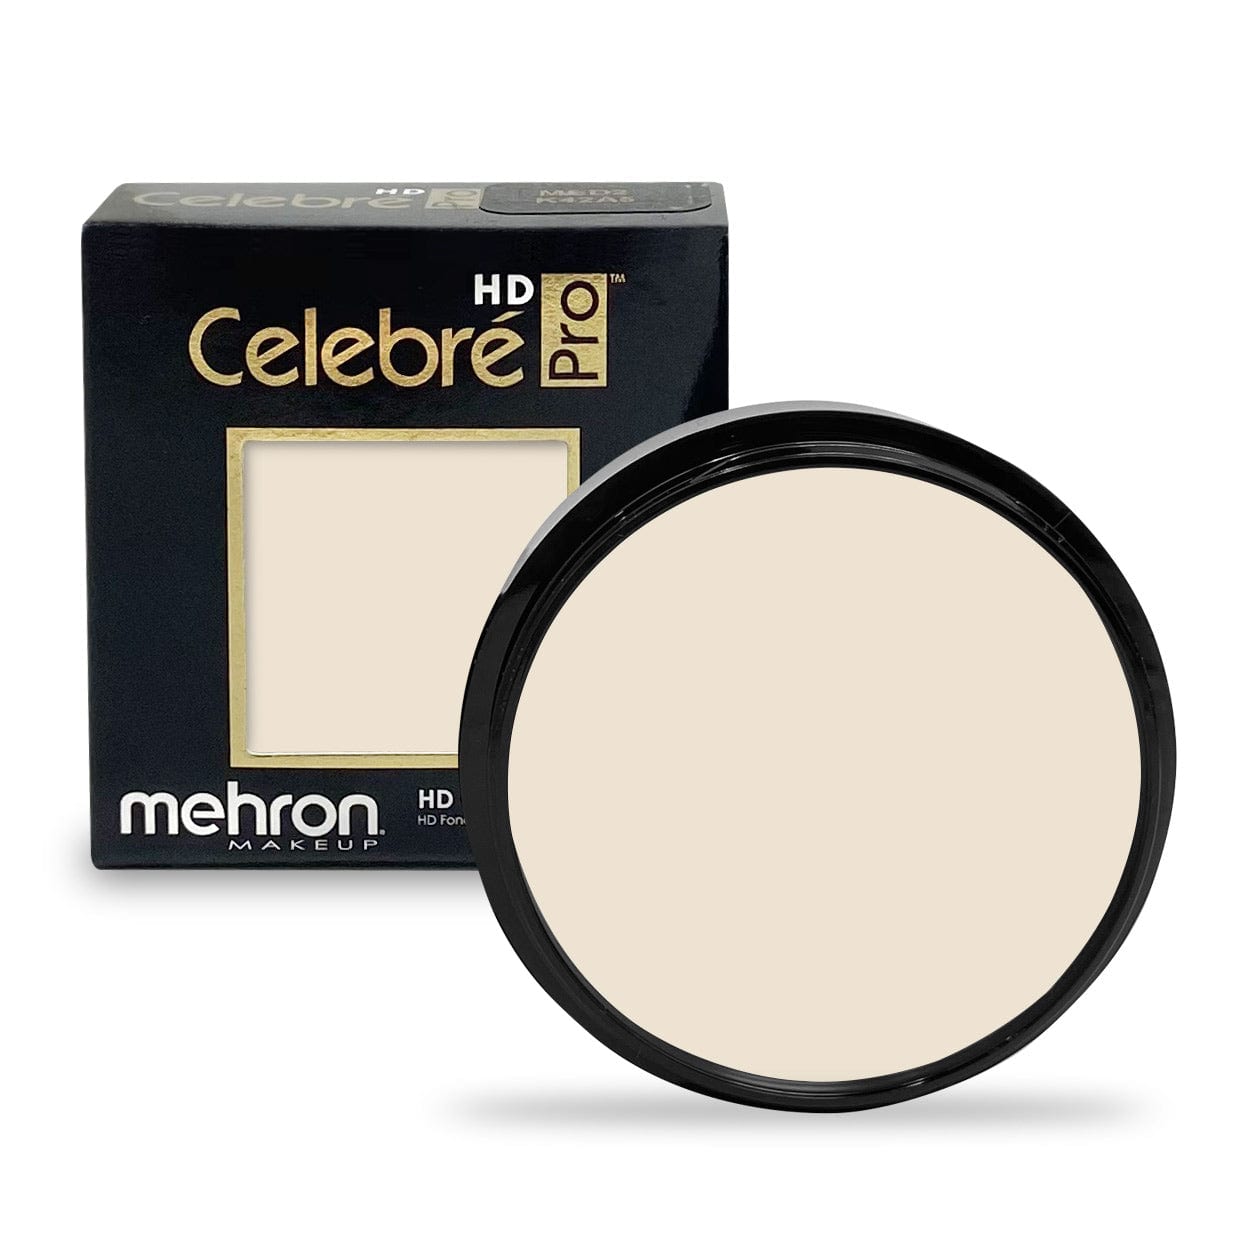 Mehron Celebre Pro HD Crème 25g - LT0 Eurasia Ivoire - Mehron